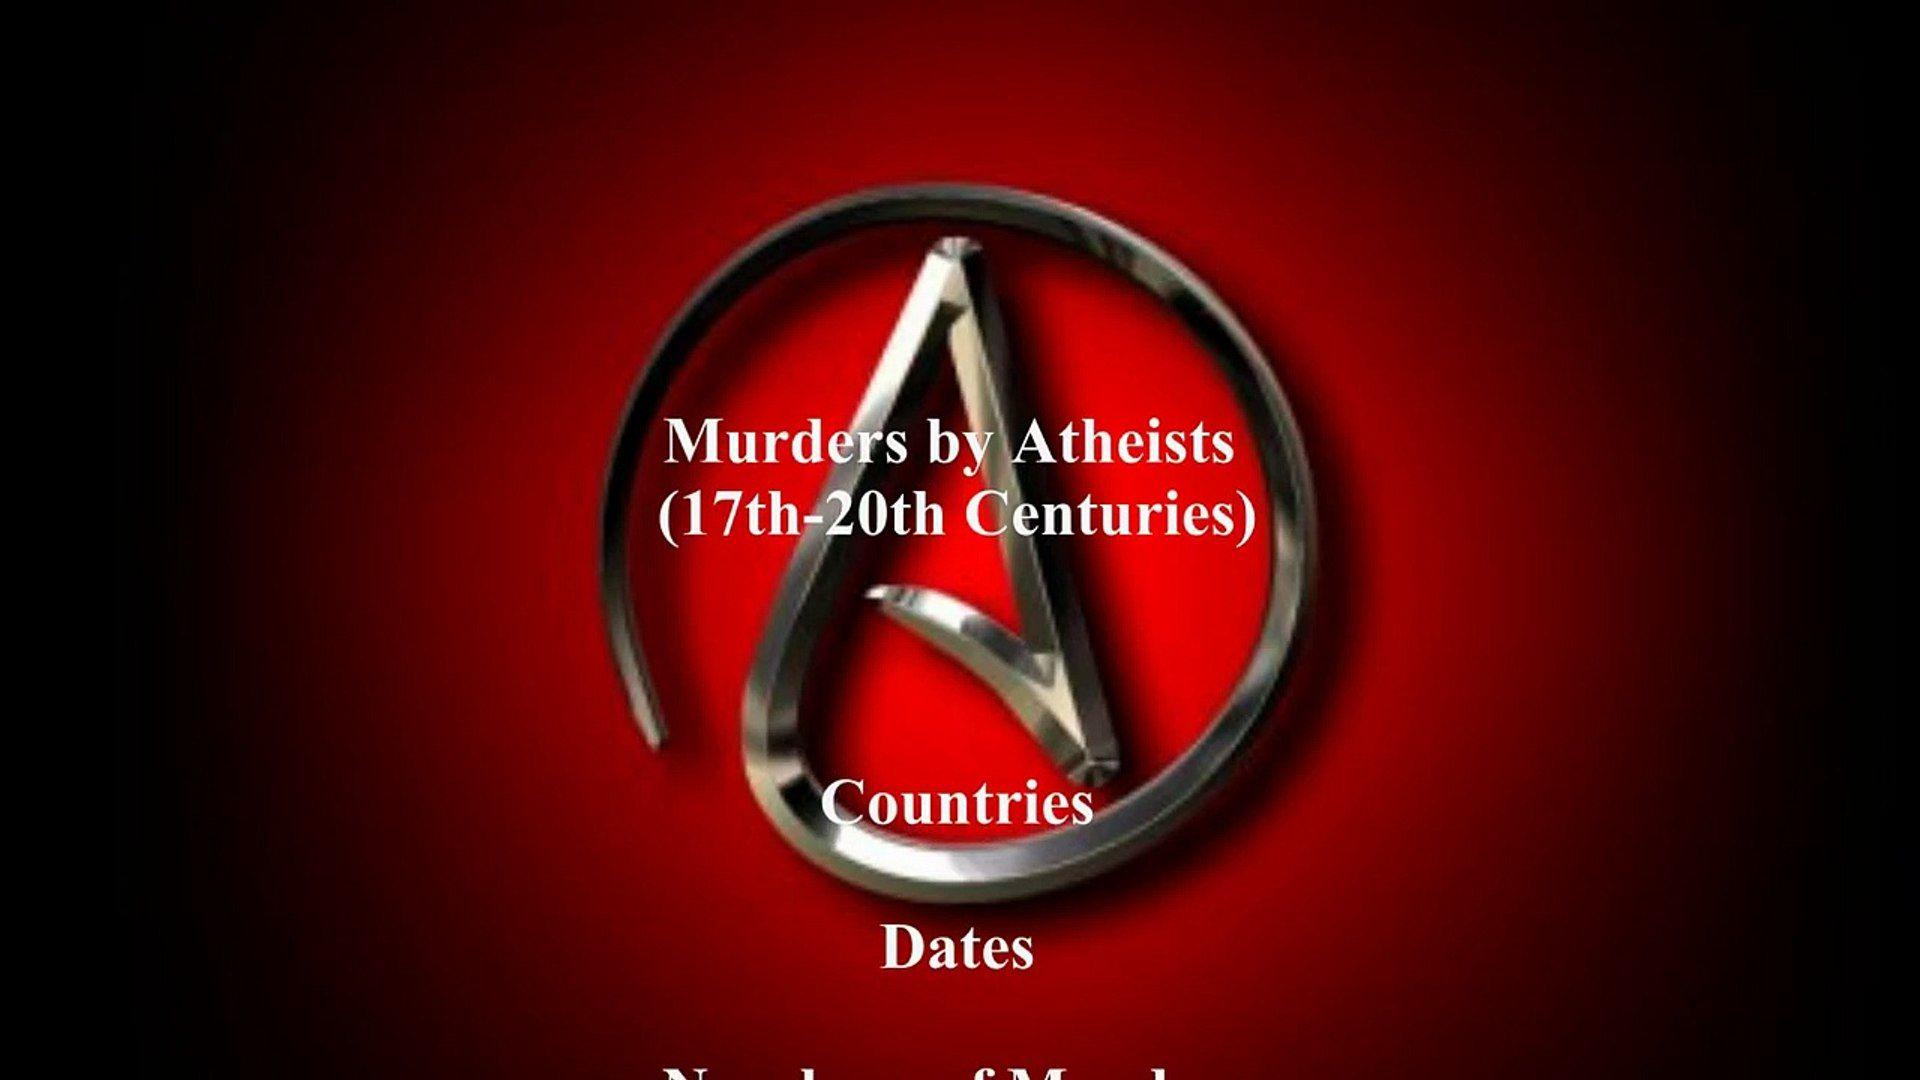 Centuries Logo - Atheist/Communist Murders through the 17th-20th Centuries